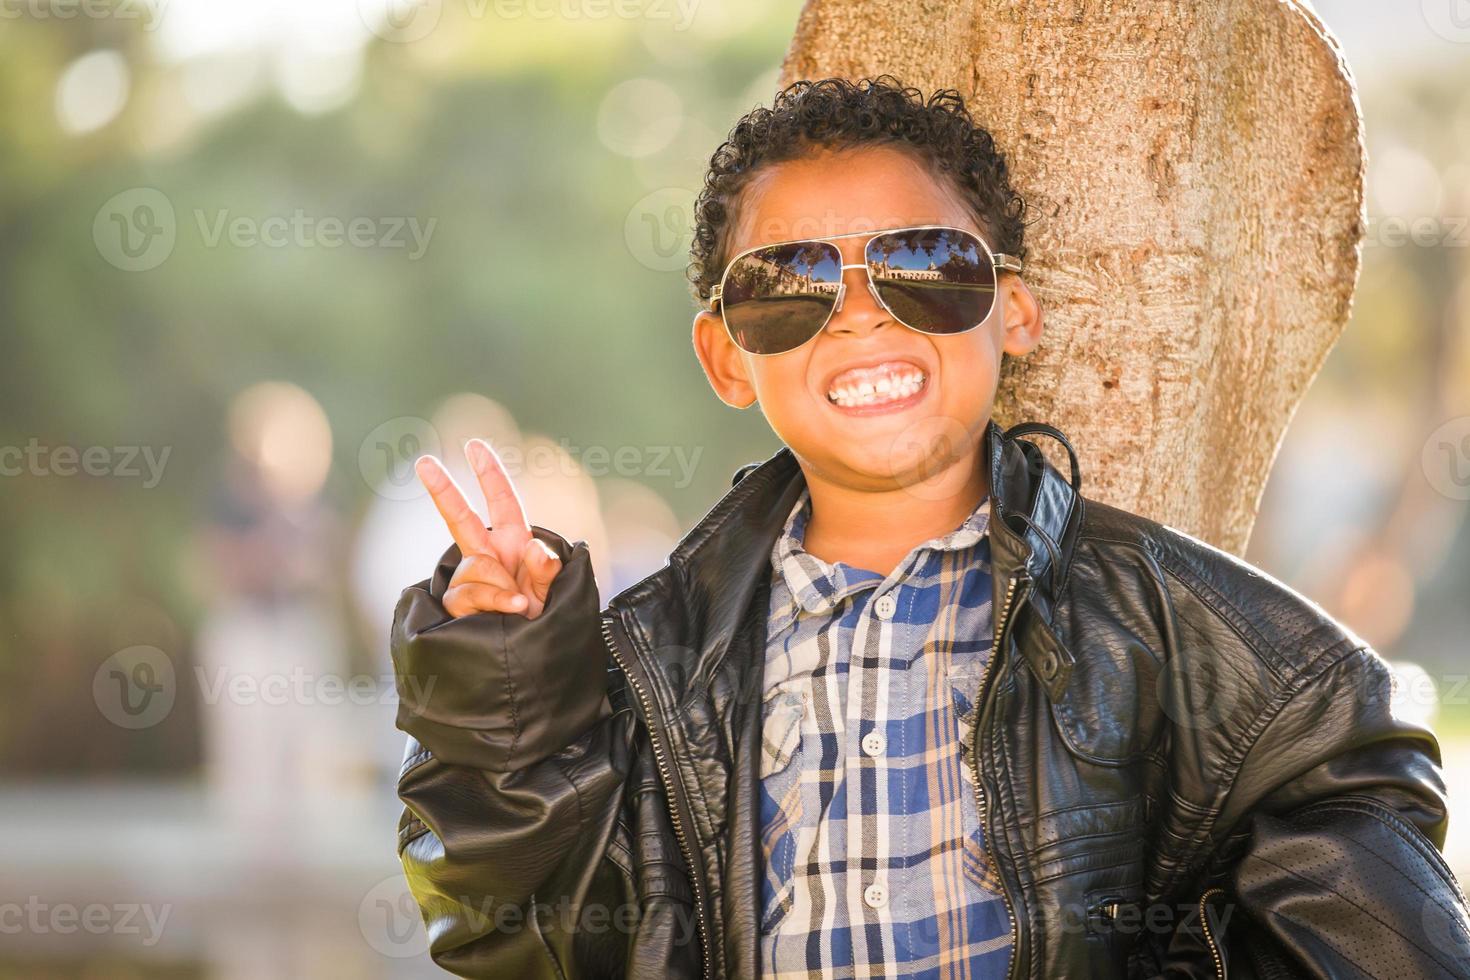 garçon afro-américain et mexicain habillé avec des lunettes de soleil et une veste en cuir photo